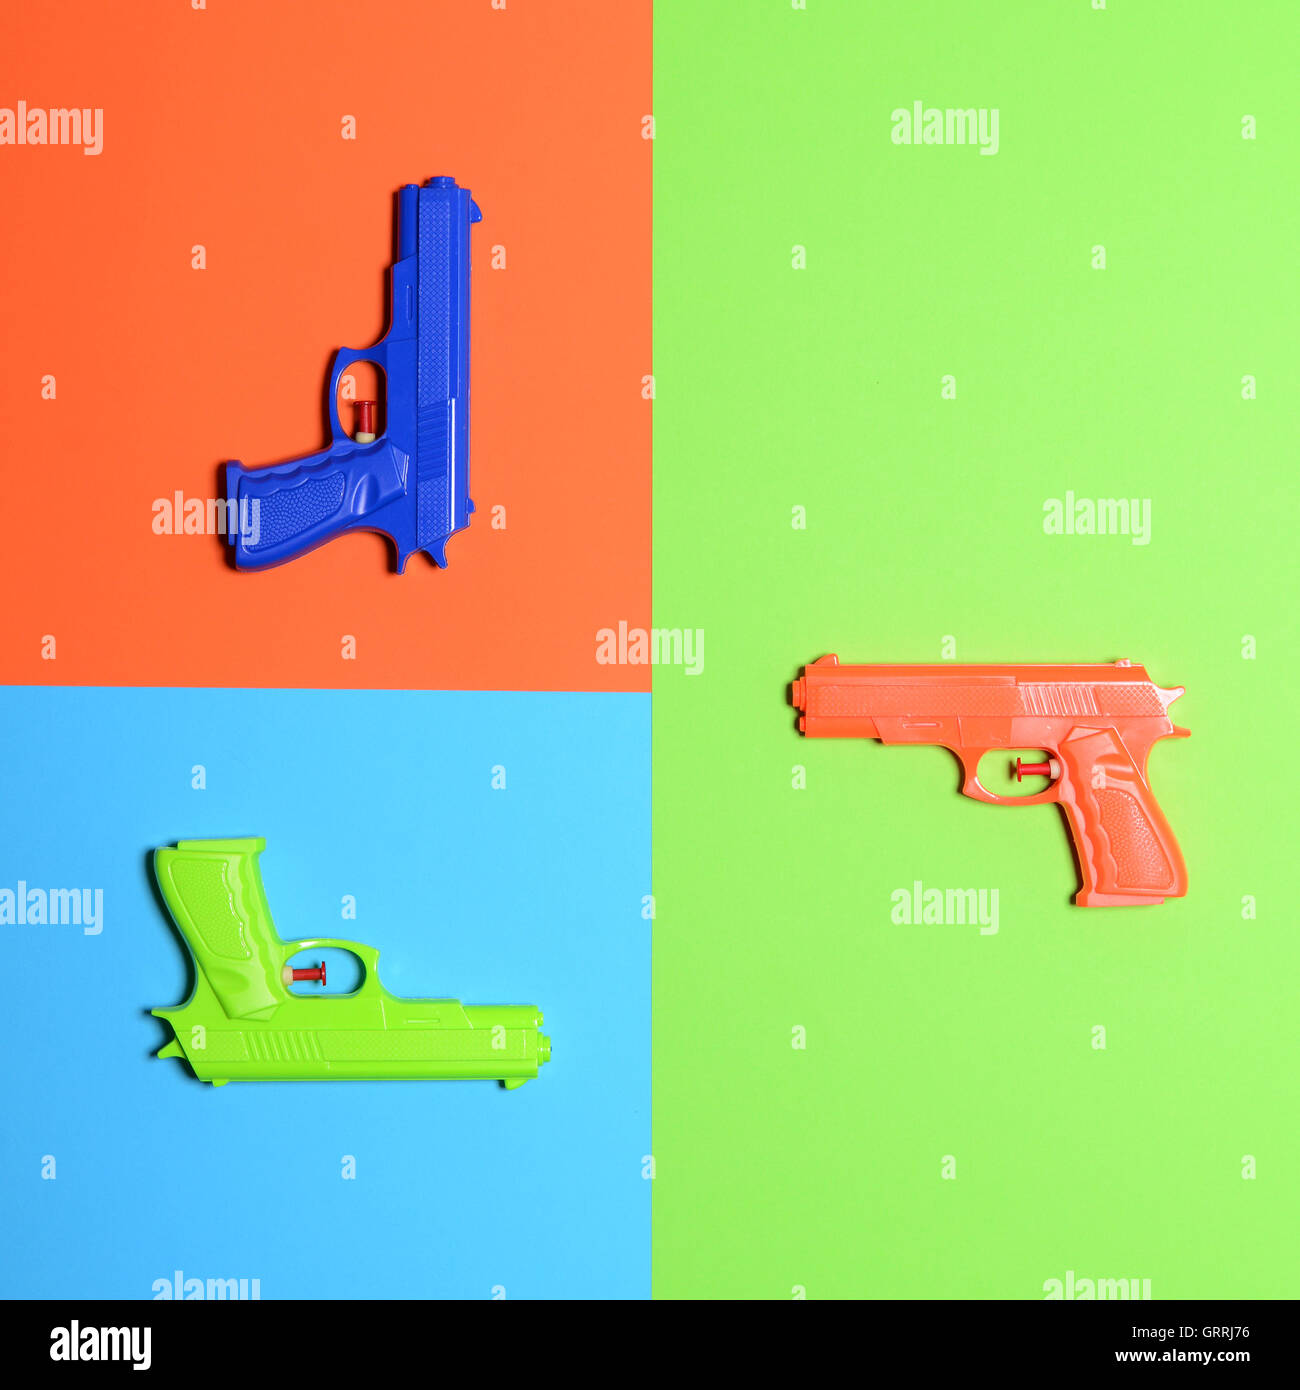 Pistolets jouets sur fond coloré - minimaliste avec vue de dessus Banque D'Images